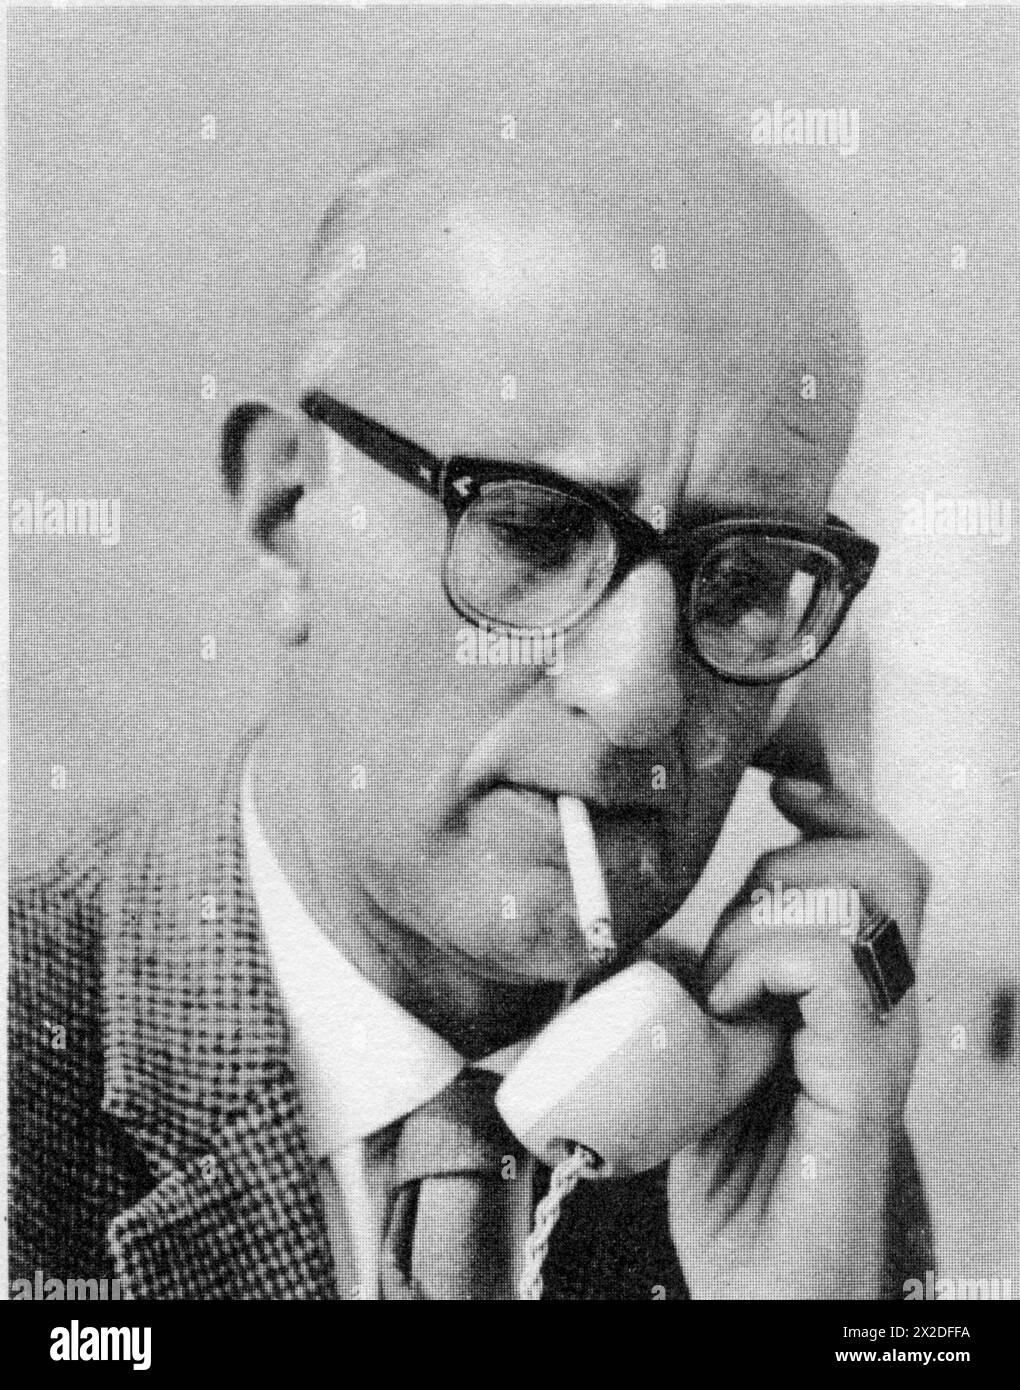 Warner, Juergen F., * 16.10.1913, journaliste allemand (deuxième télévision allemande), années 1960, AUTORISATION-ADDITIONNELLE-INFO-NOT-AVAILABLE Banque D'Images